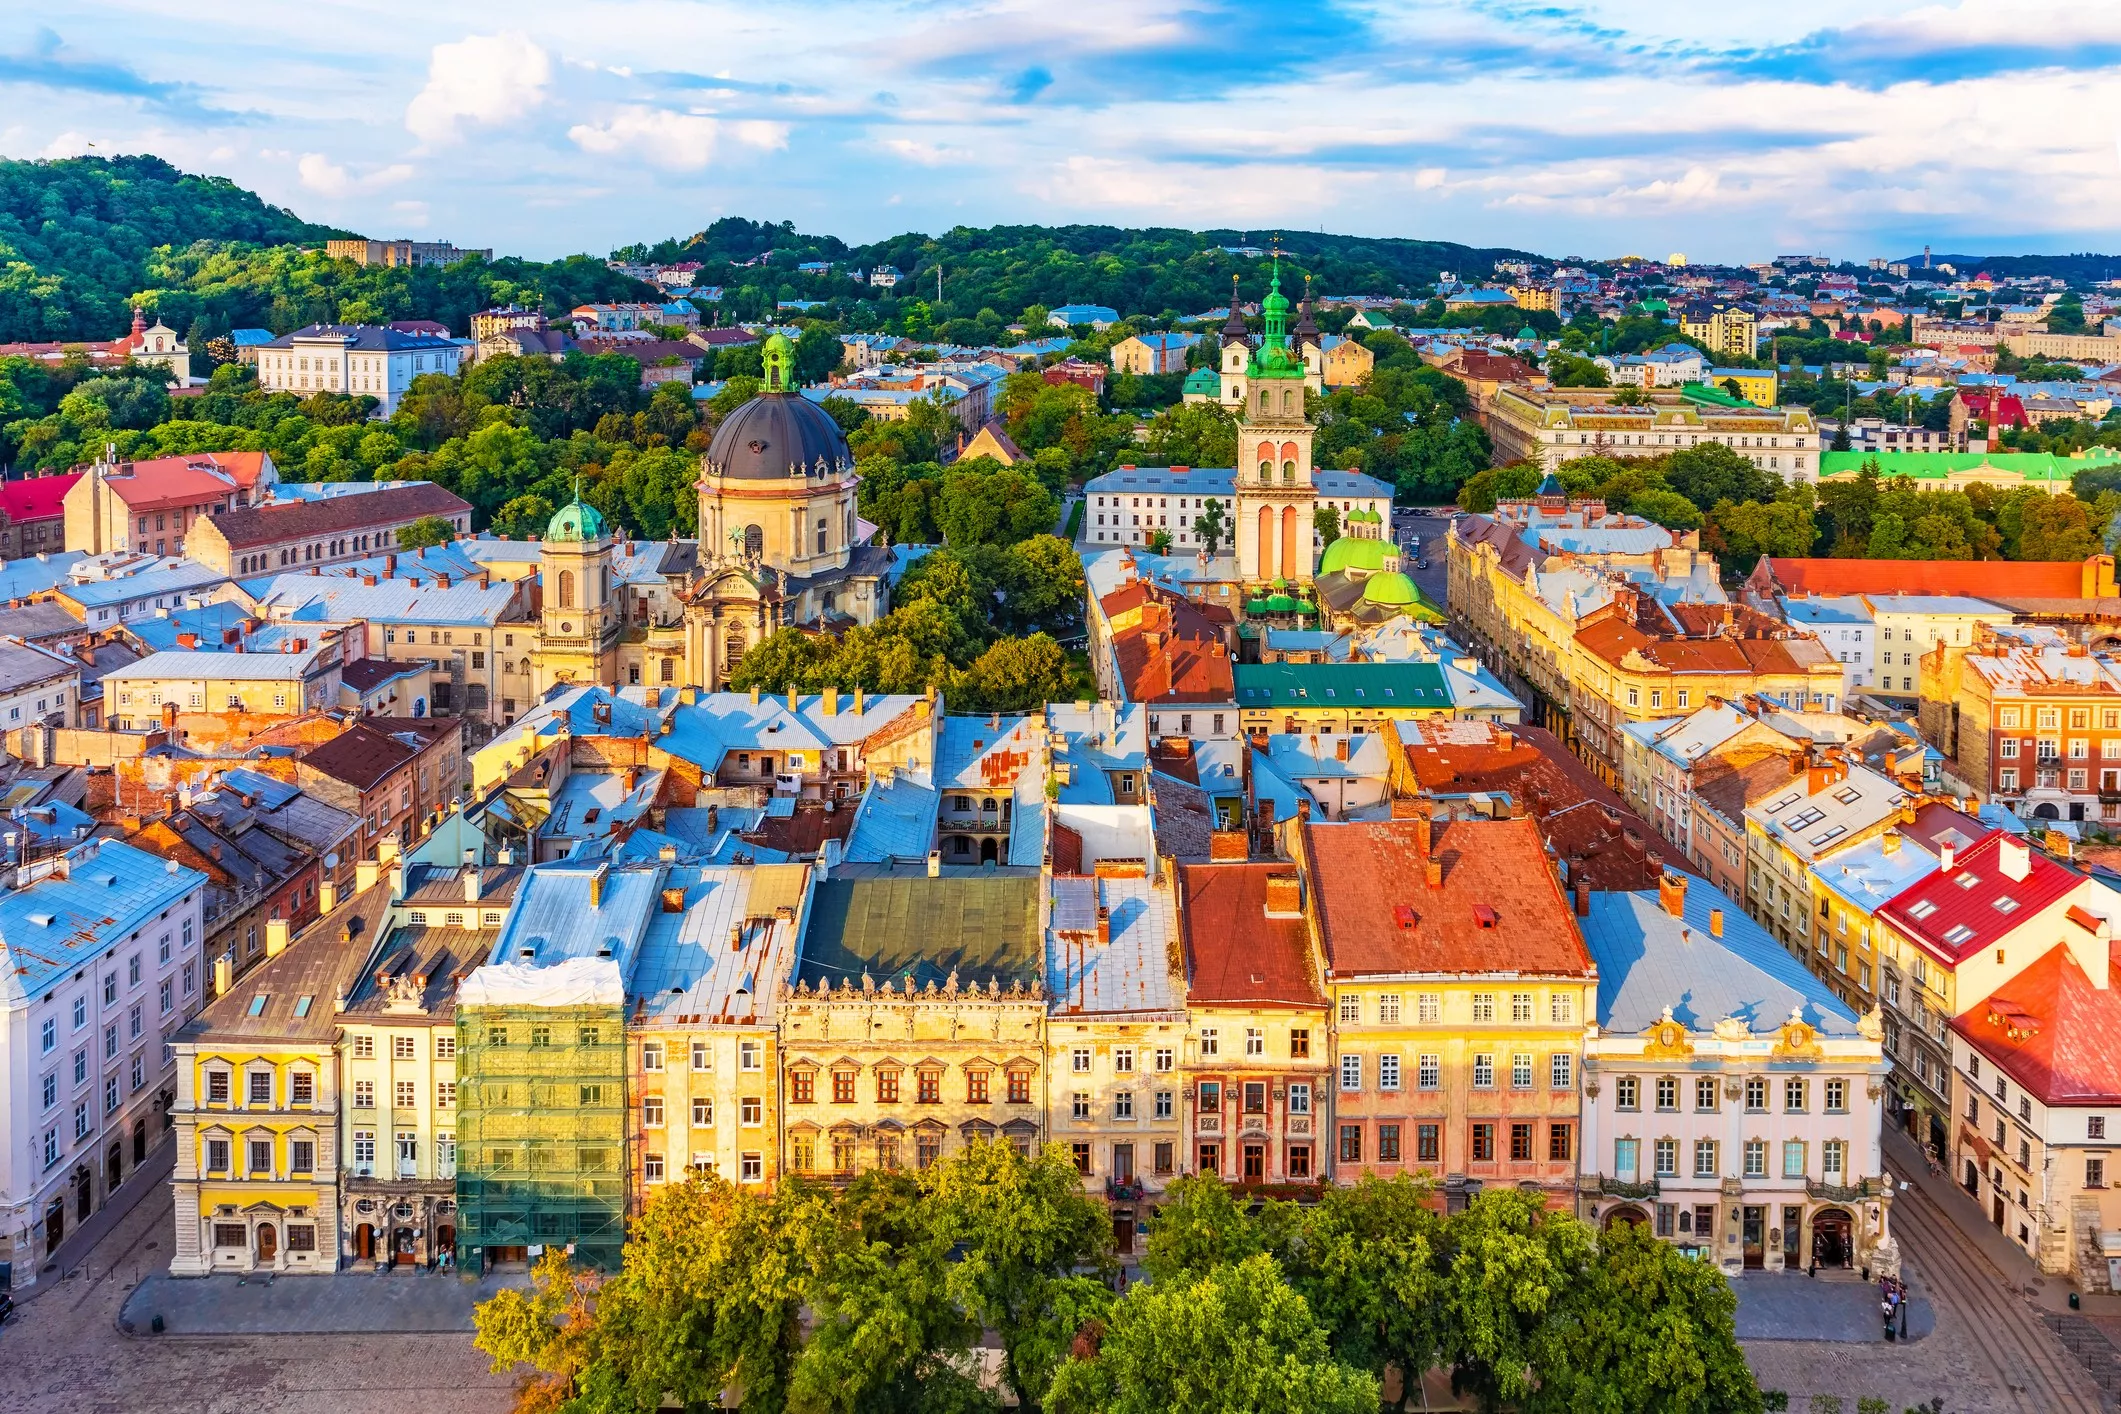 Lviv, a Ucraïna, és un crisol de cultures i estils arquitectònics: hi conviuen Renaixement, Rococó i Modernisme en perfecta harmonia